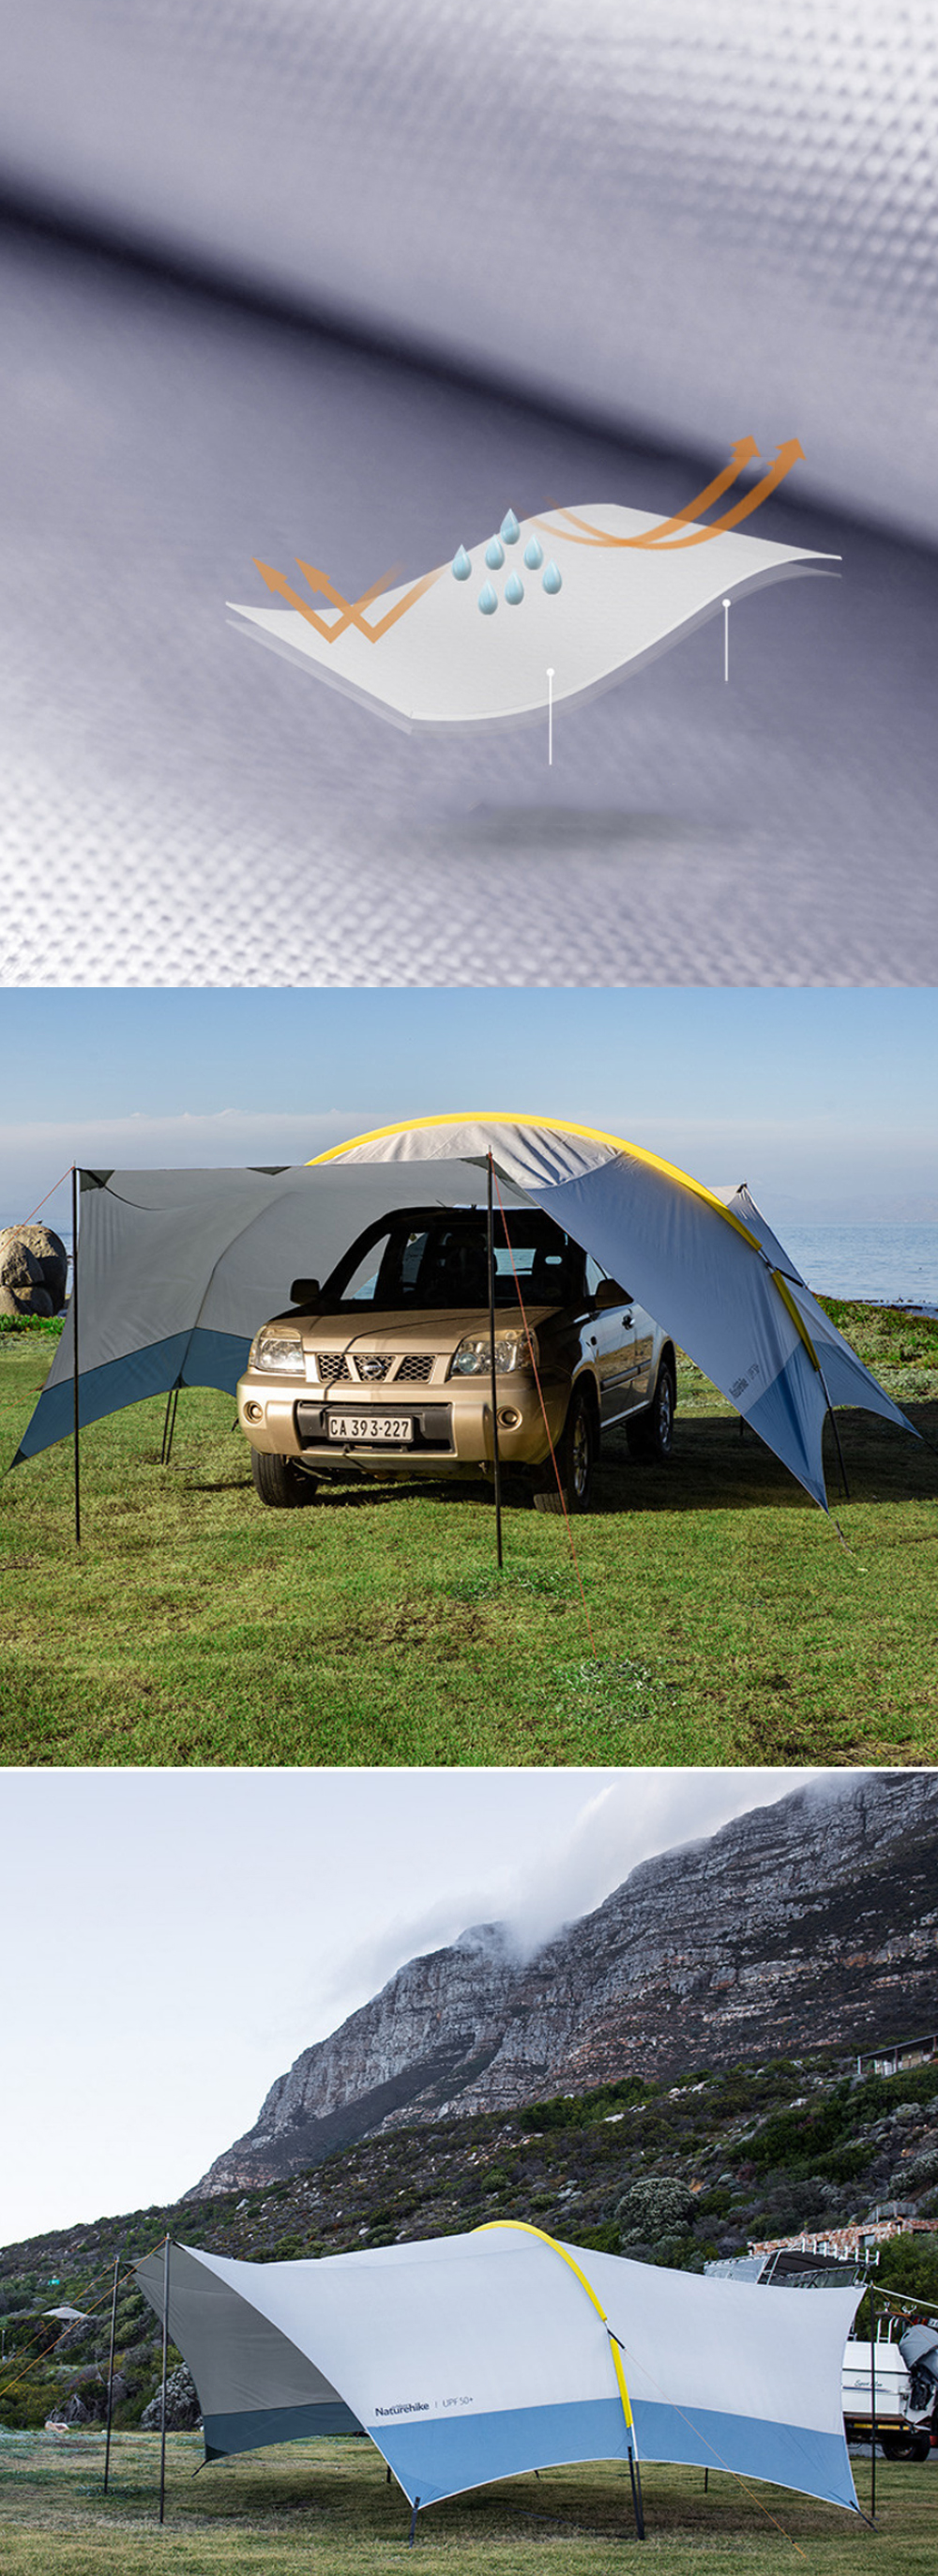 Naturehike Camping Canopy Tarp Shelter Set 150D Tecido Oxford Dobrável À Prova de Vento À Prova de Vento Cortinas de Tenda Familiar Toldo Viagem ao Ar Livre